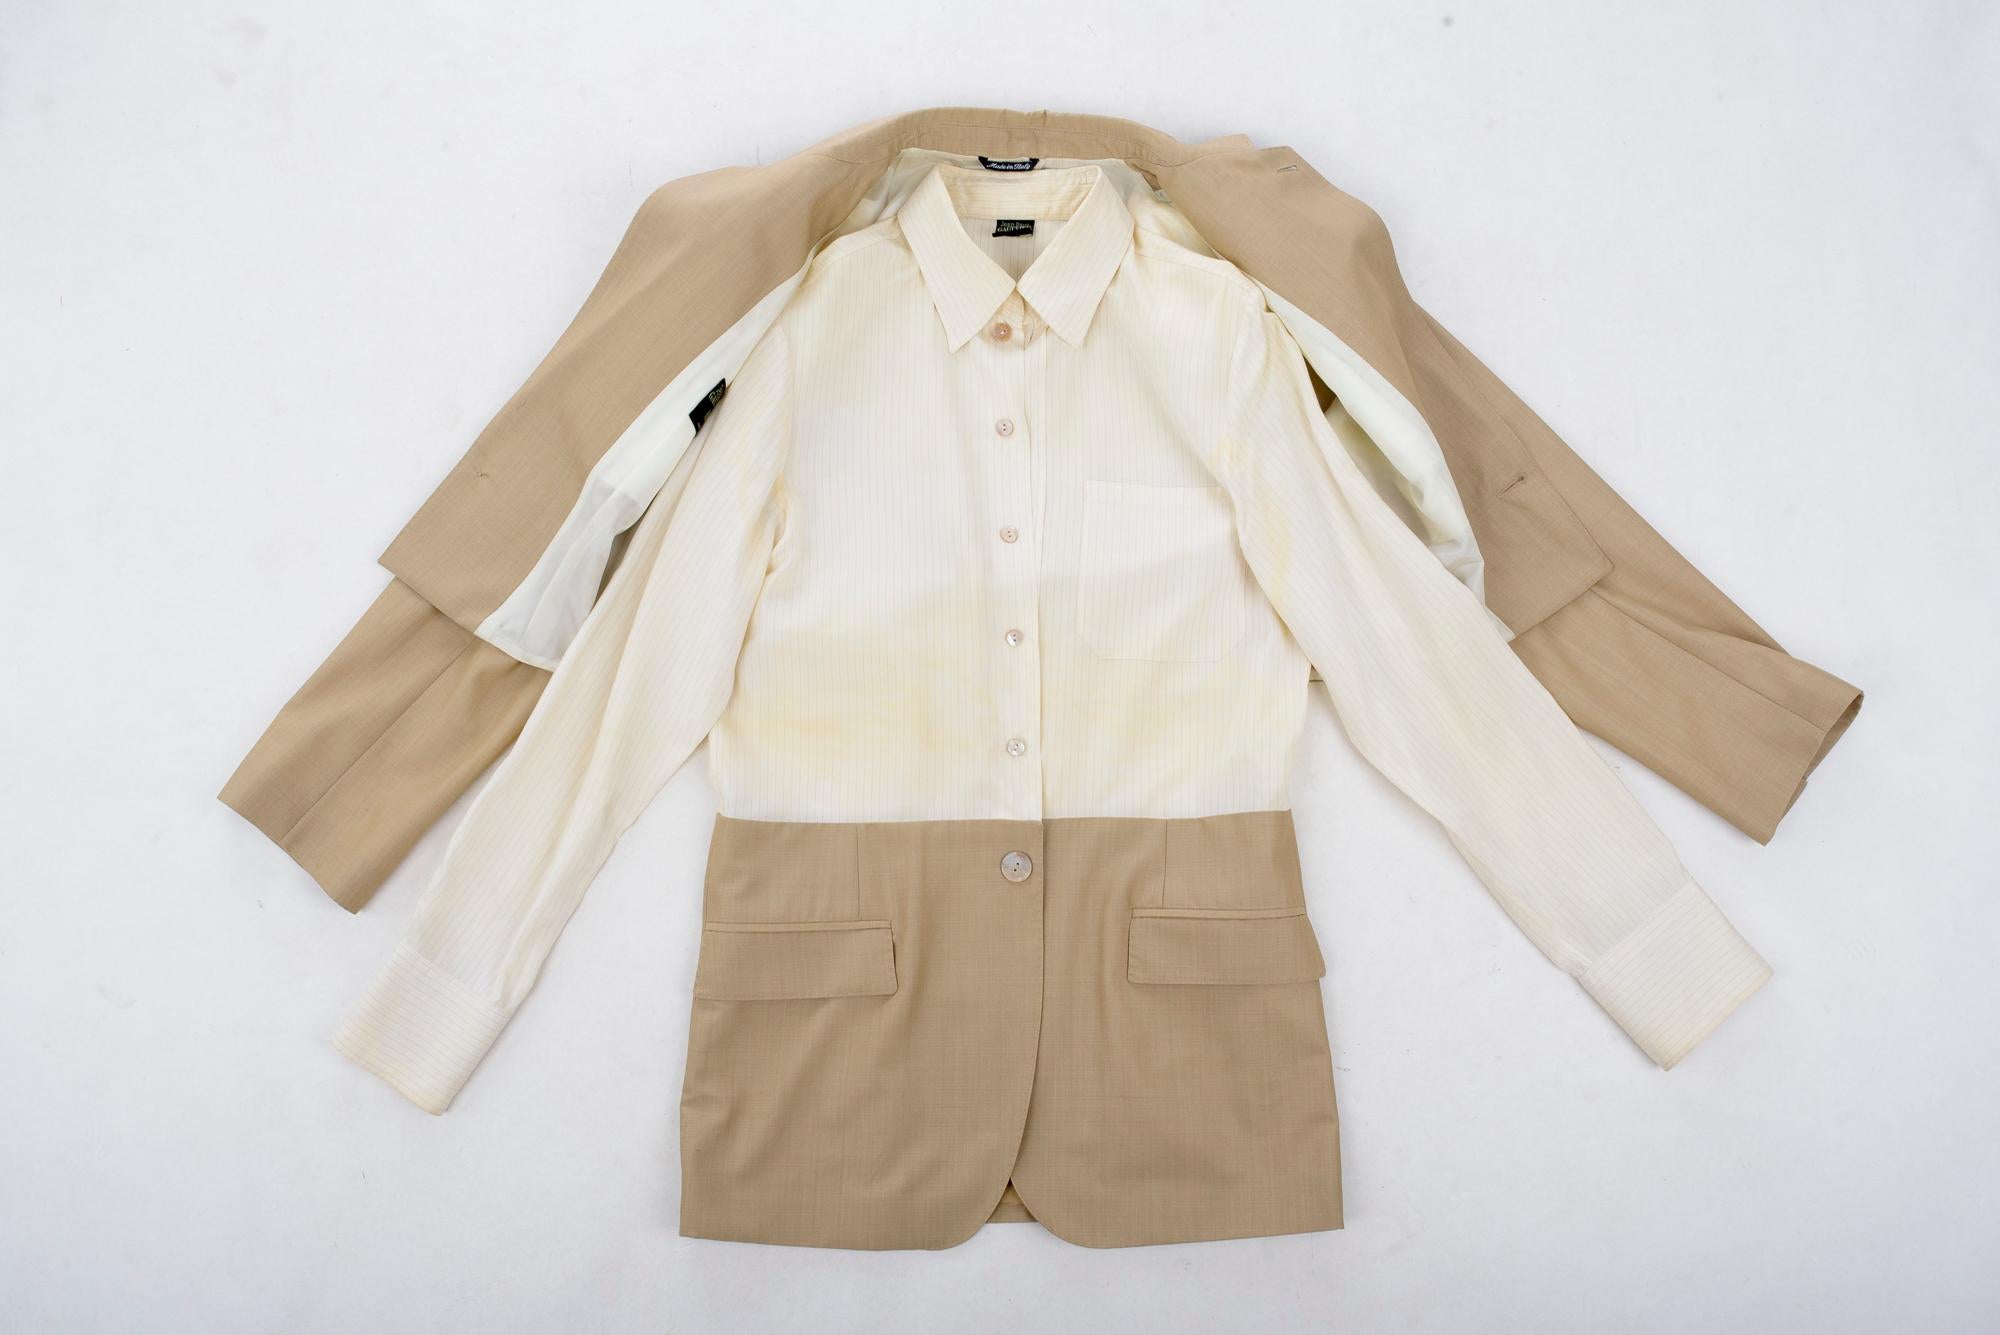 Circa 1995

Frankreich

Witzige Jacke mit integriertem Hemd von Jean-Paul Gaultier Homme aus den 1990er Jahren. Zweiteiliges Ensemble, langärmeliges Hemd, das vorne mit Perlmuttknöpfen geschlossen wird, und kurze Jacke, die über das Hemd gefaltet